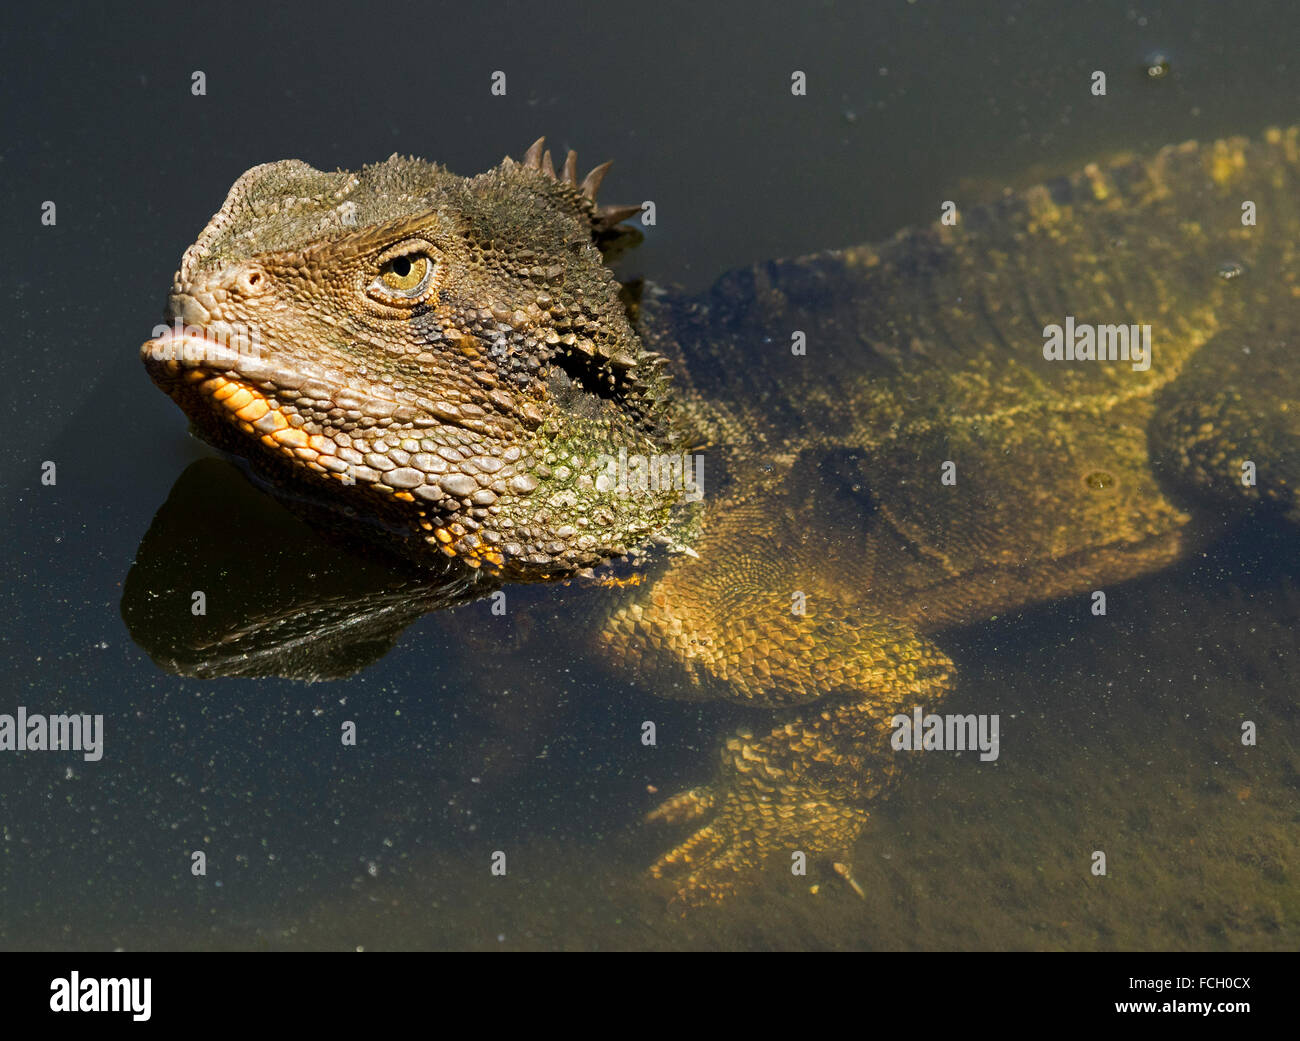 Australia orientale drago acqua lizard, Physignathus lesueurii in acqua con sopra la testa e corpo visibile sotto l'acqua chiara nel parco urbano Foto Stock